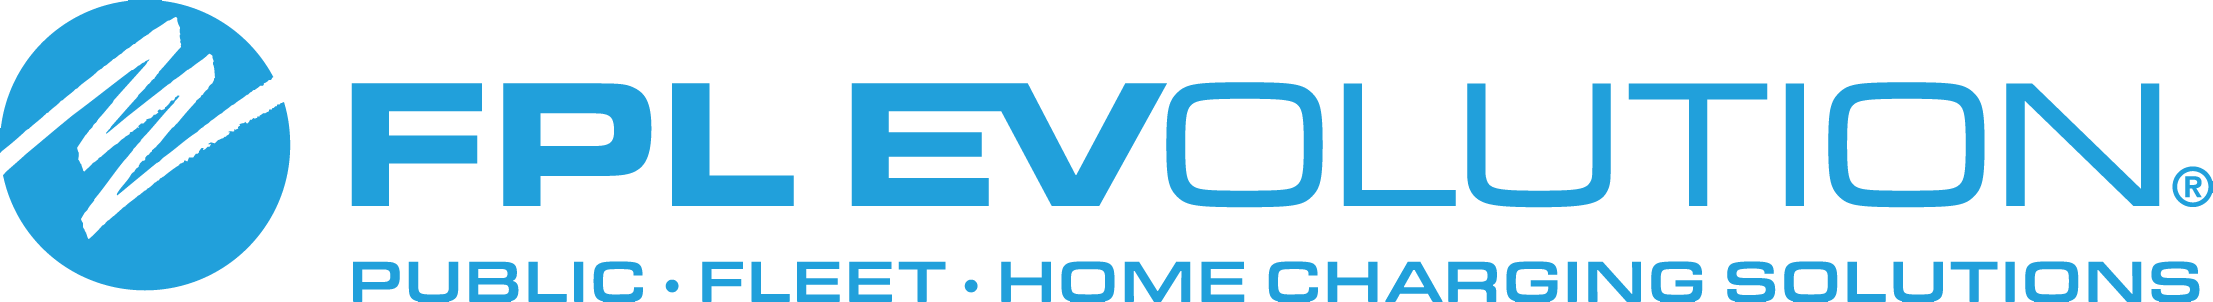 FPL Ev logo